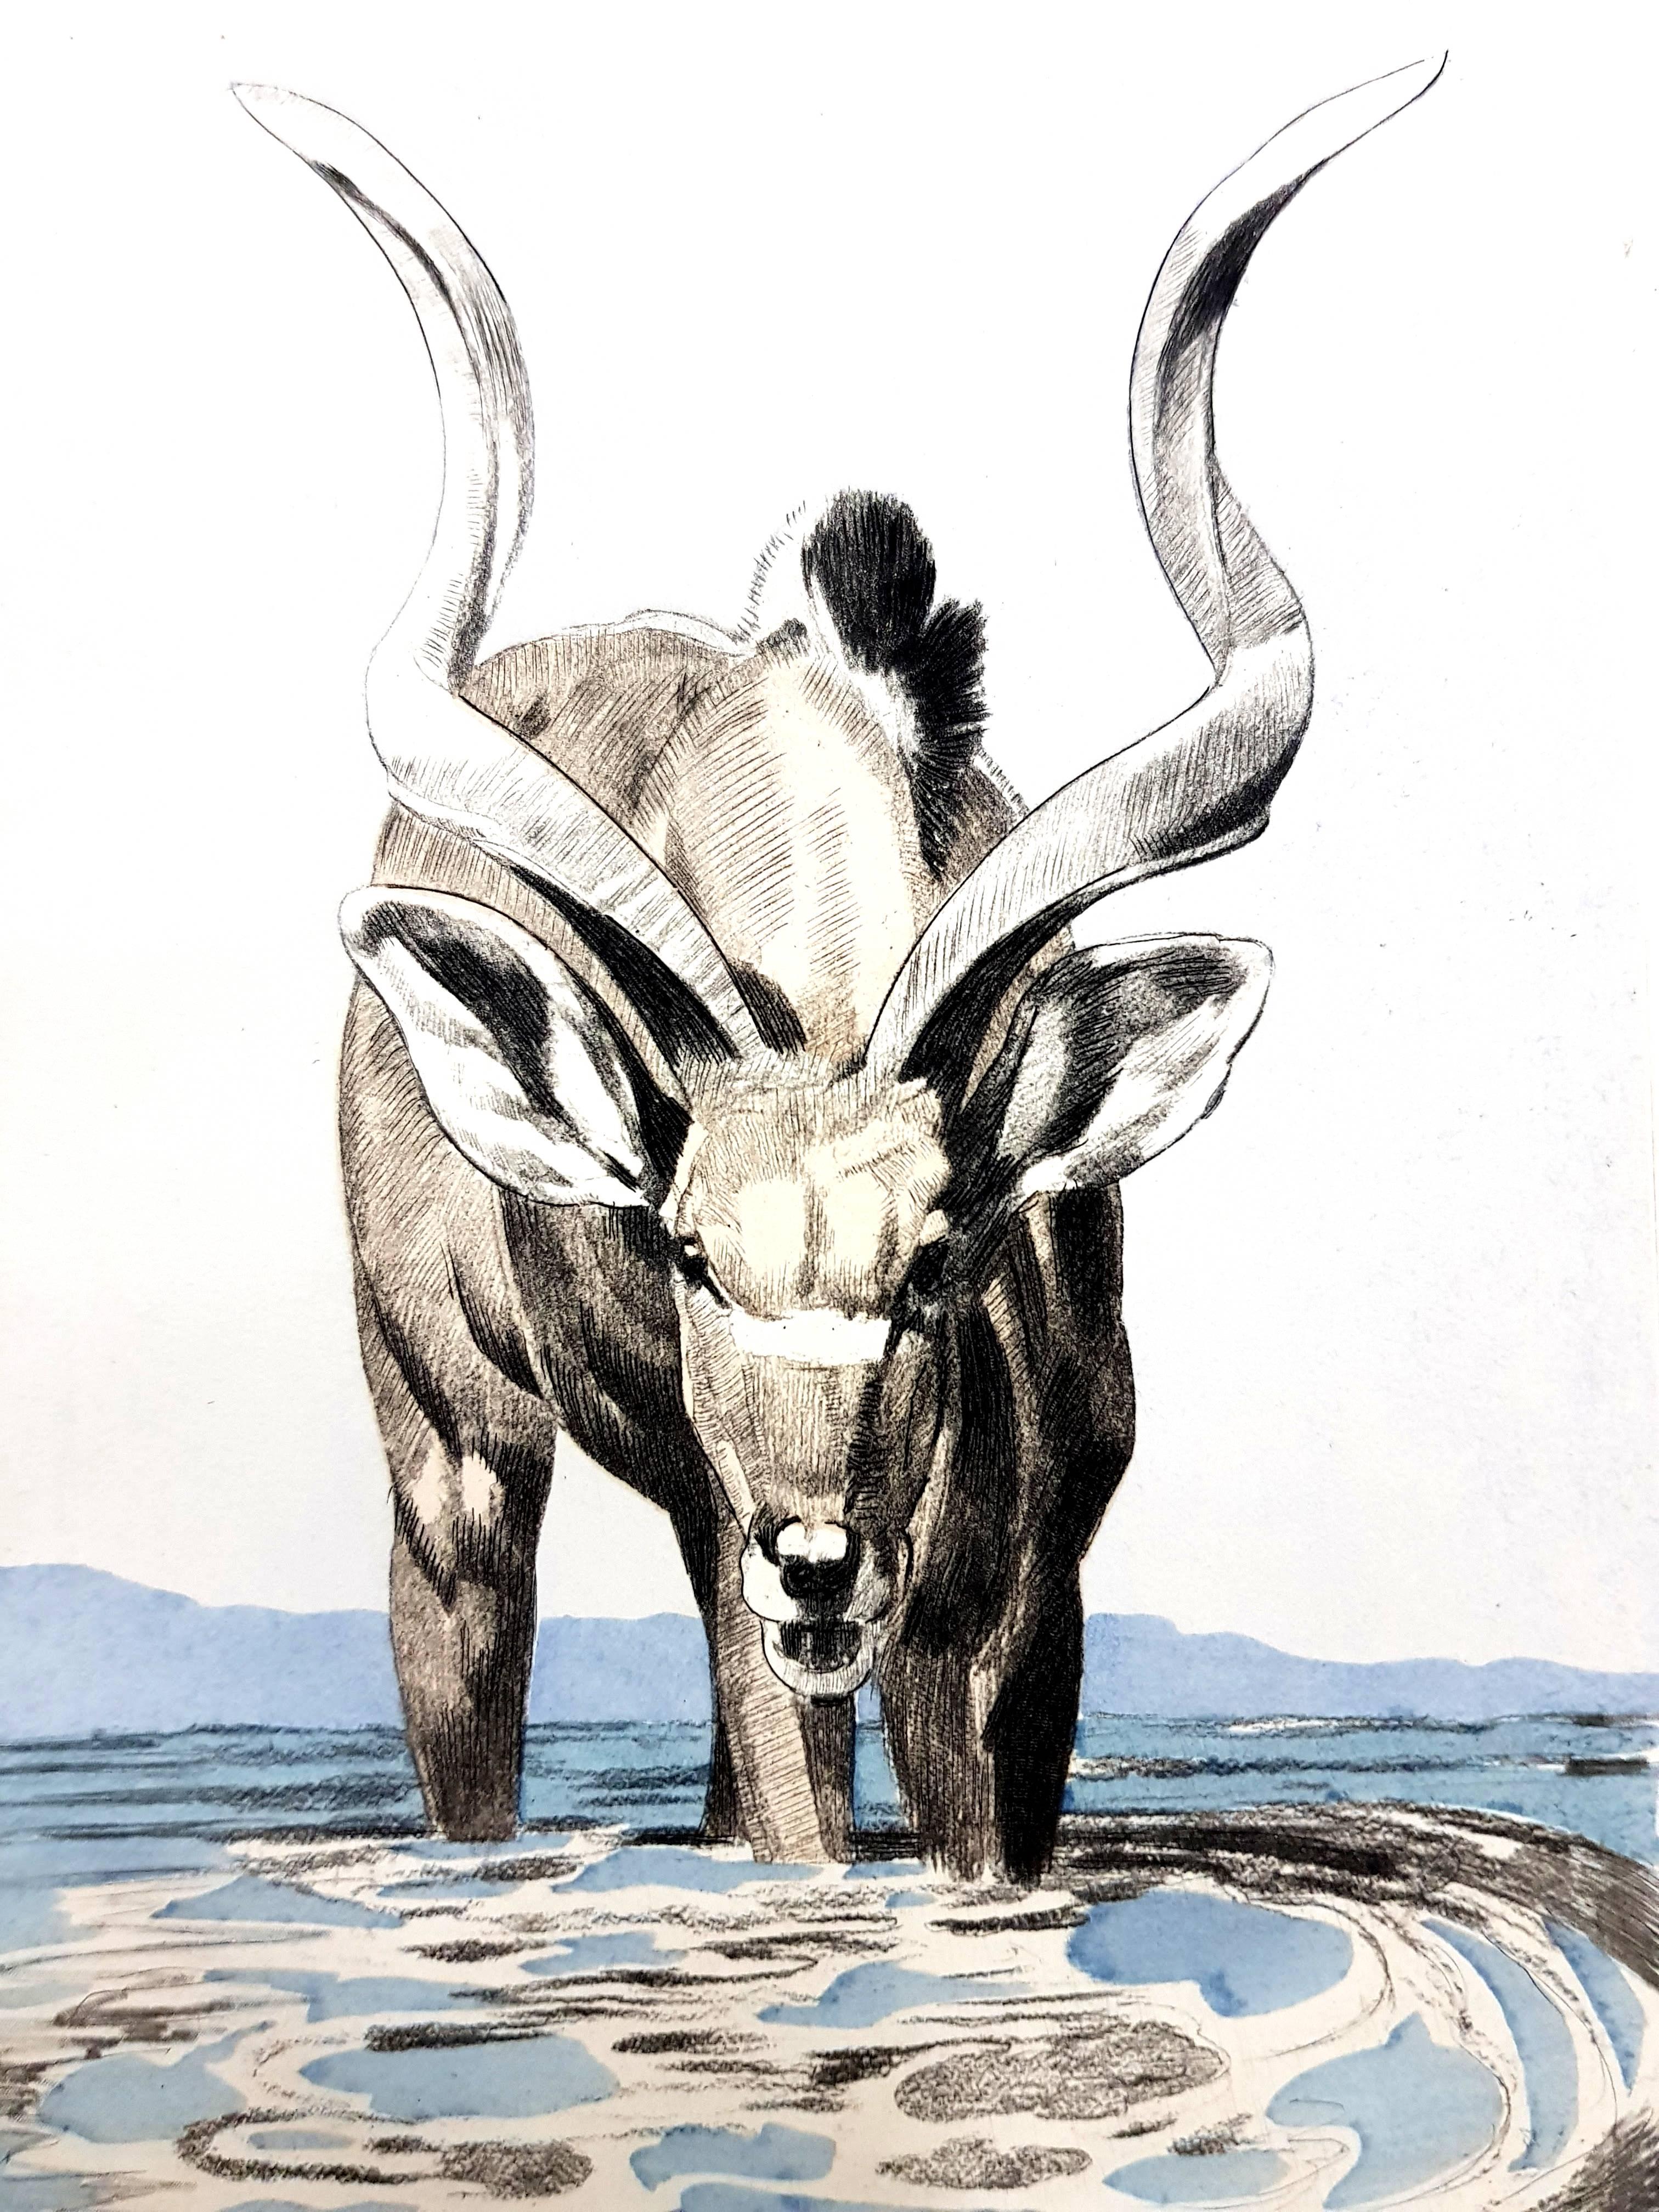 Paul Jouve (after) - Antelope - Engraving - Print by Pierre-Paul Jouve